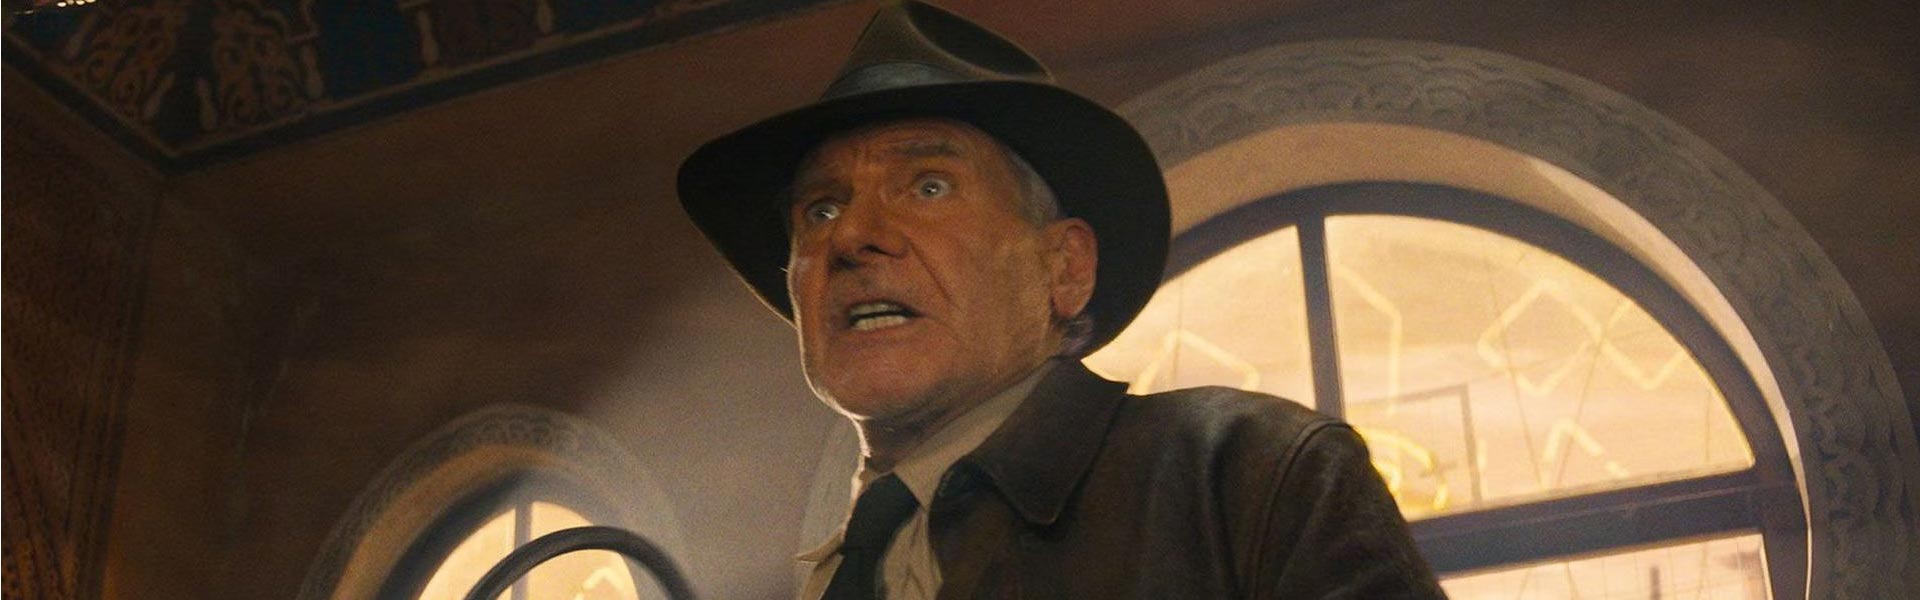 Crítica de 'Indiana Jones y el Dial del destino': una película perdida en el tiempo